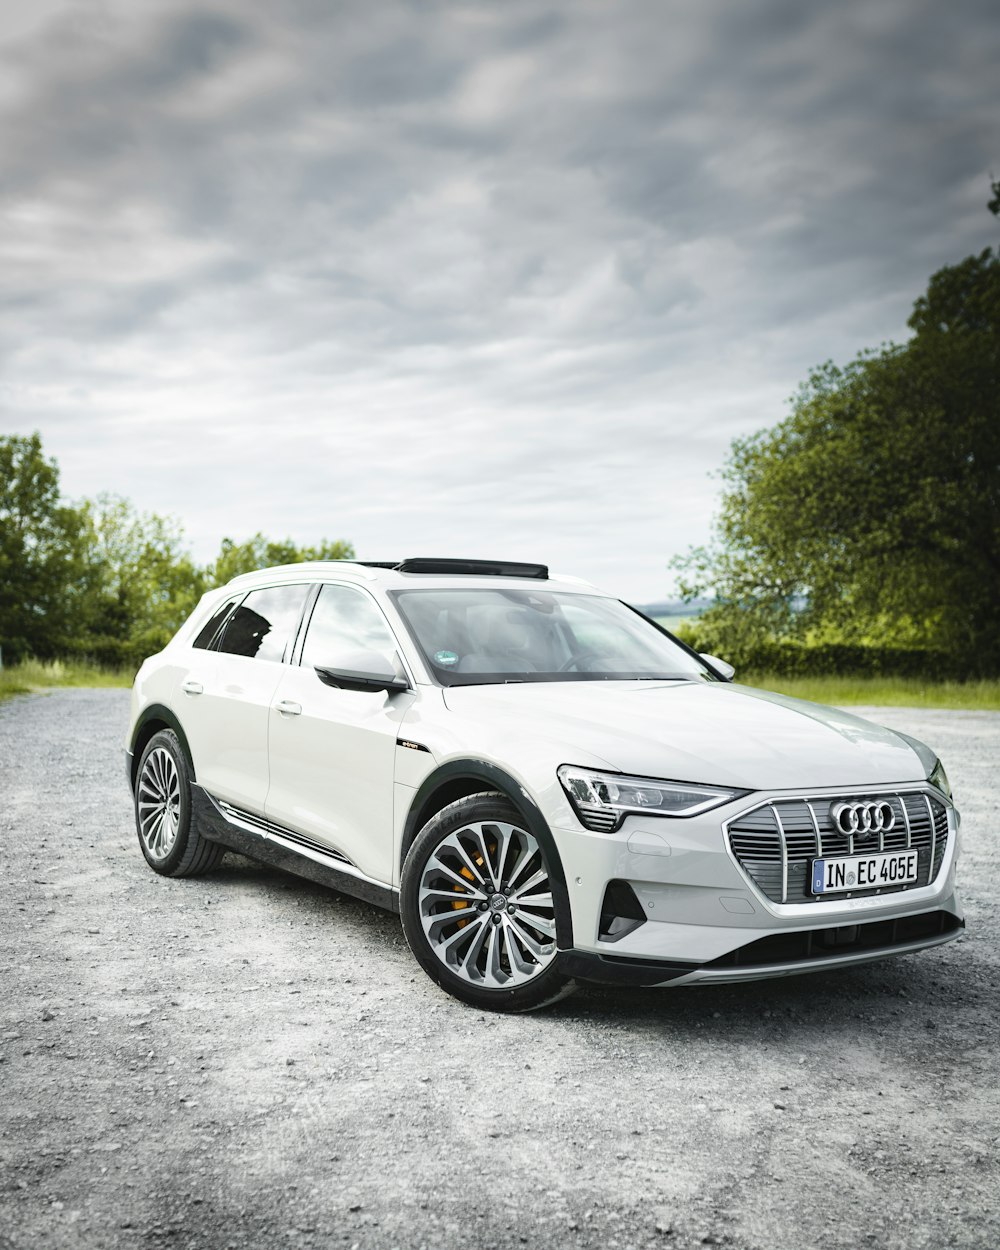 Audi sedán blanco en carretera de cemento